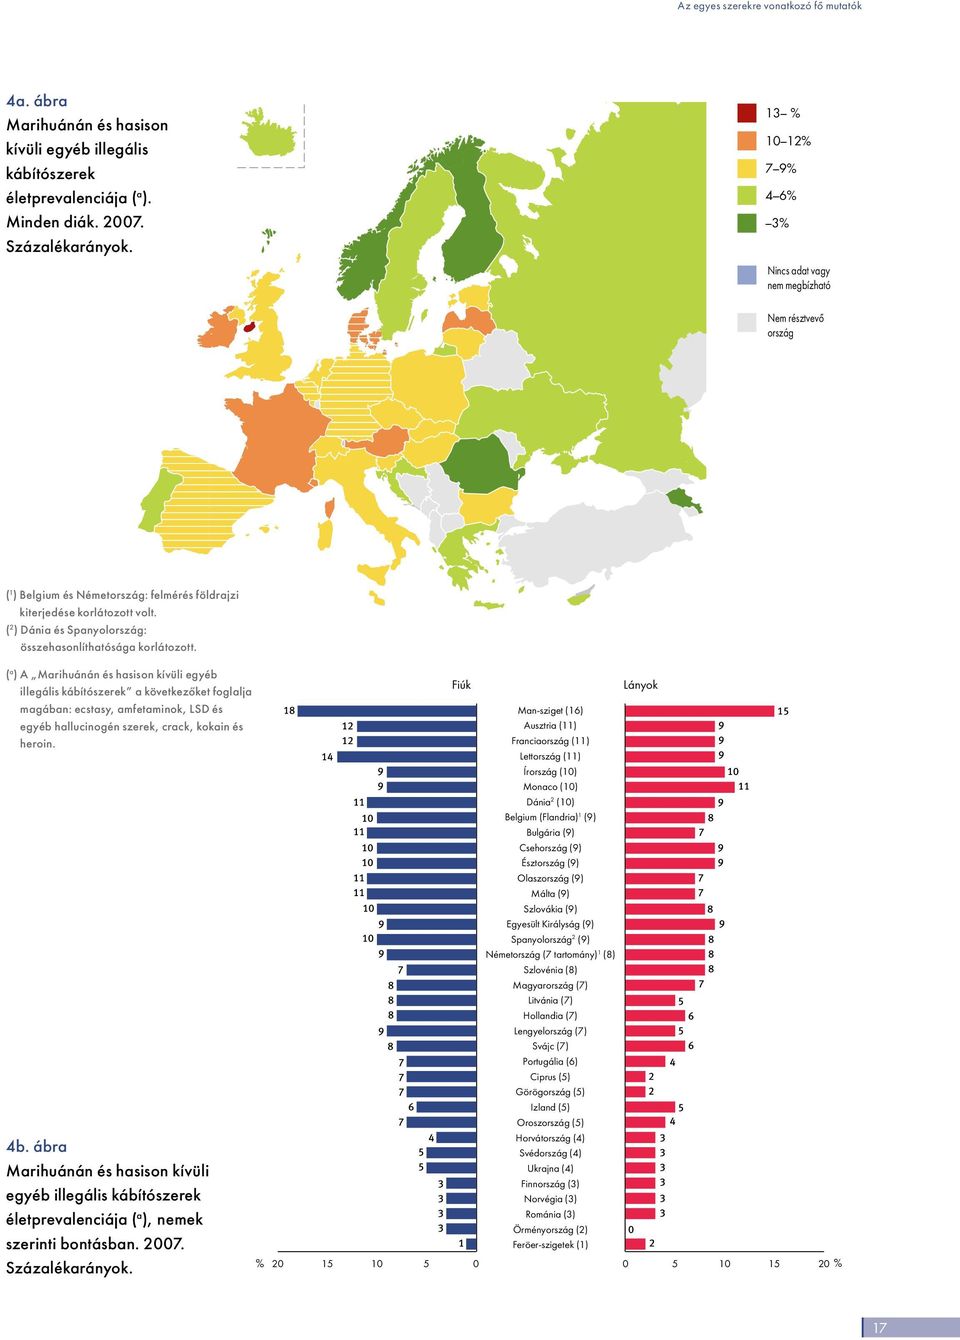 ( 2 ) Dánia és Spanyolország: összehasonlíthatósága korlátozott.